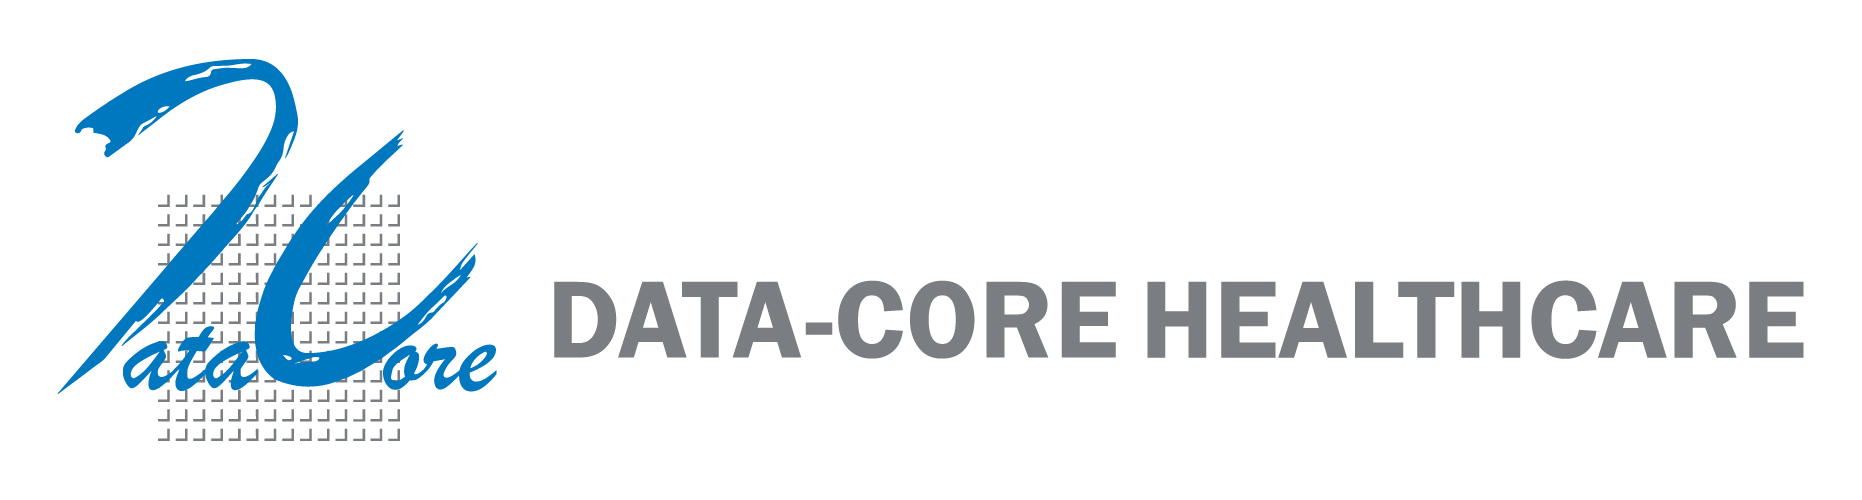 Data-Core Healthcare